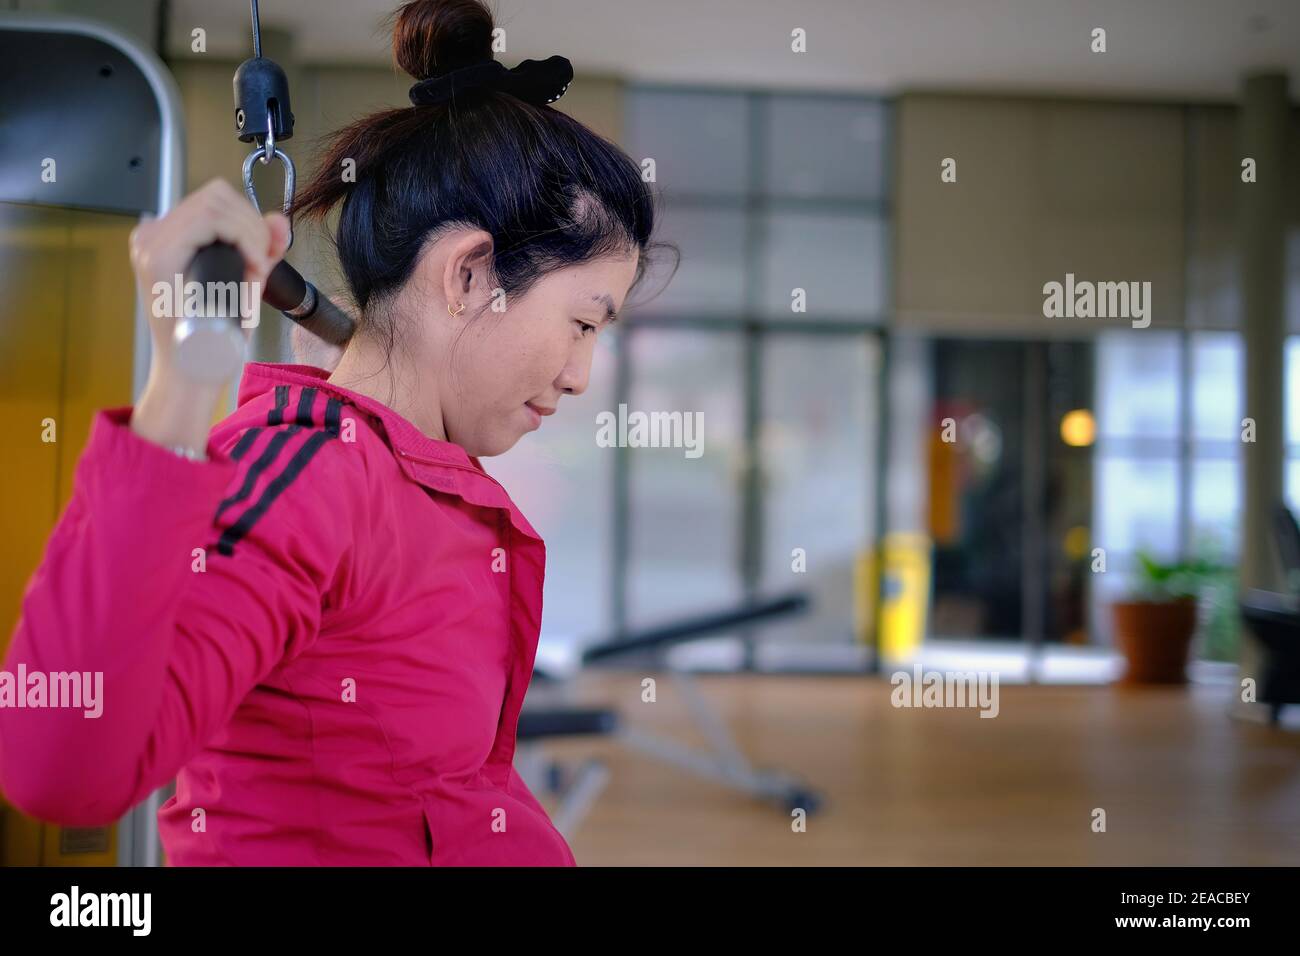 Une femme asiatique attirante est au milieu de son entraînement, haltérophilie en utilisant un latissimus dorsi ou une machine à tirer Lat pour renforcer son Bo supérieur Banque D'Images